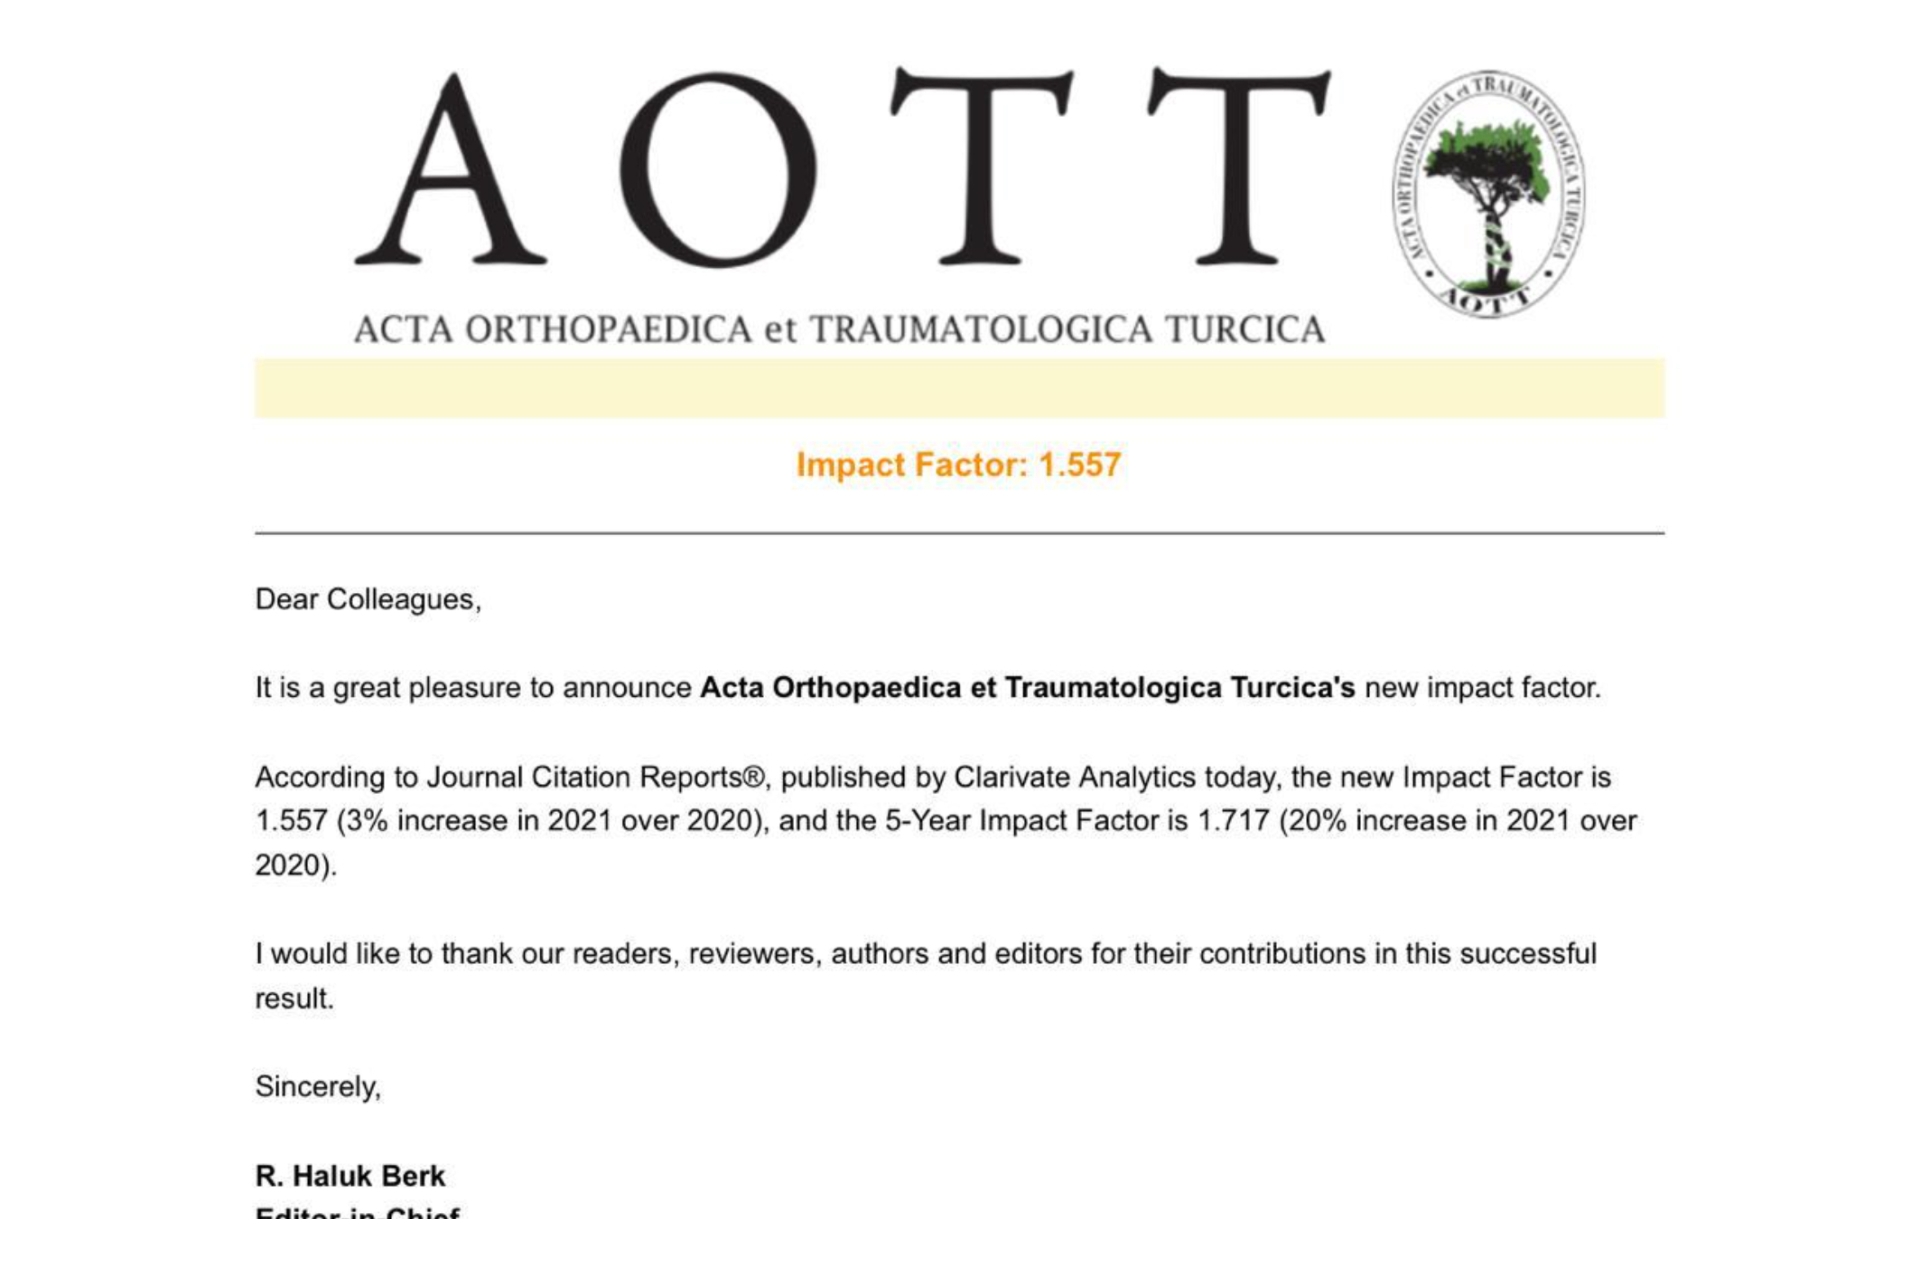 "Clarivate Analytics'in yayınladığı Journal Cication Reports'a göre AOTT dergimizin yeni impact faktörü 1.557 ve Son 5 yıllık impact faktörü 1.717 olarak açıklanmıştır."